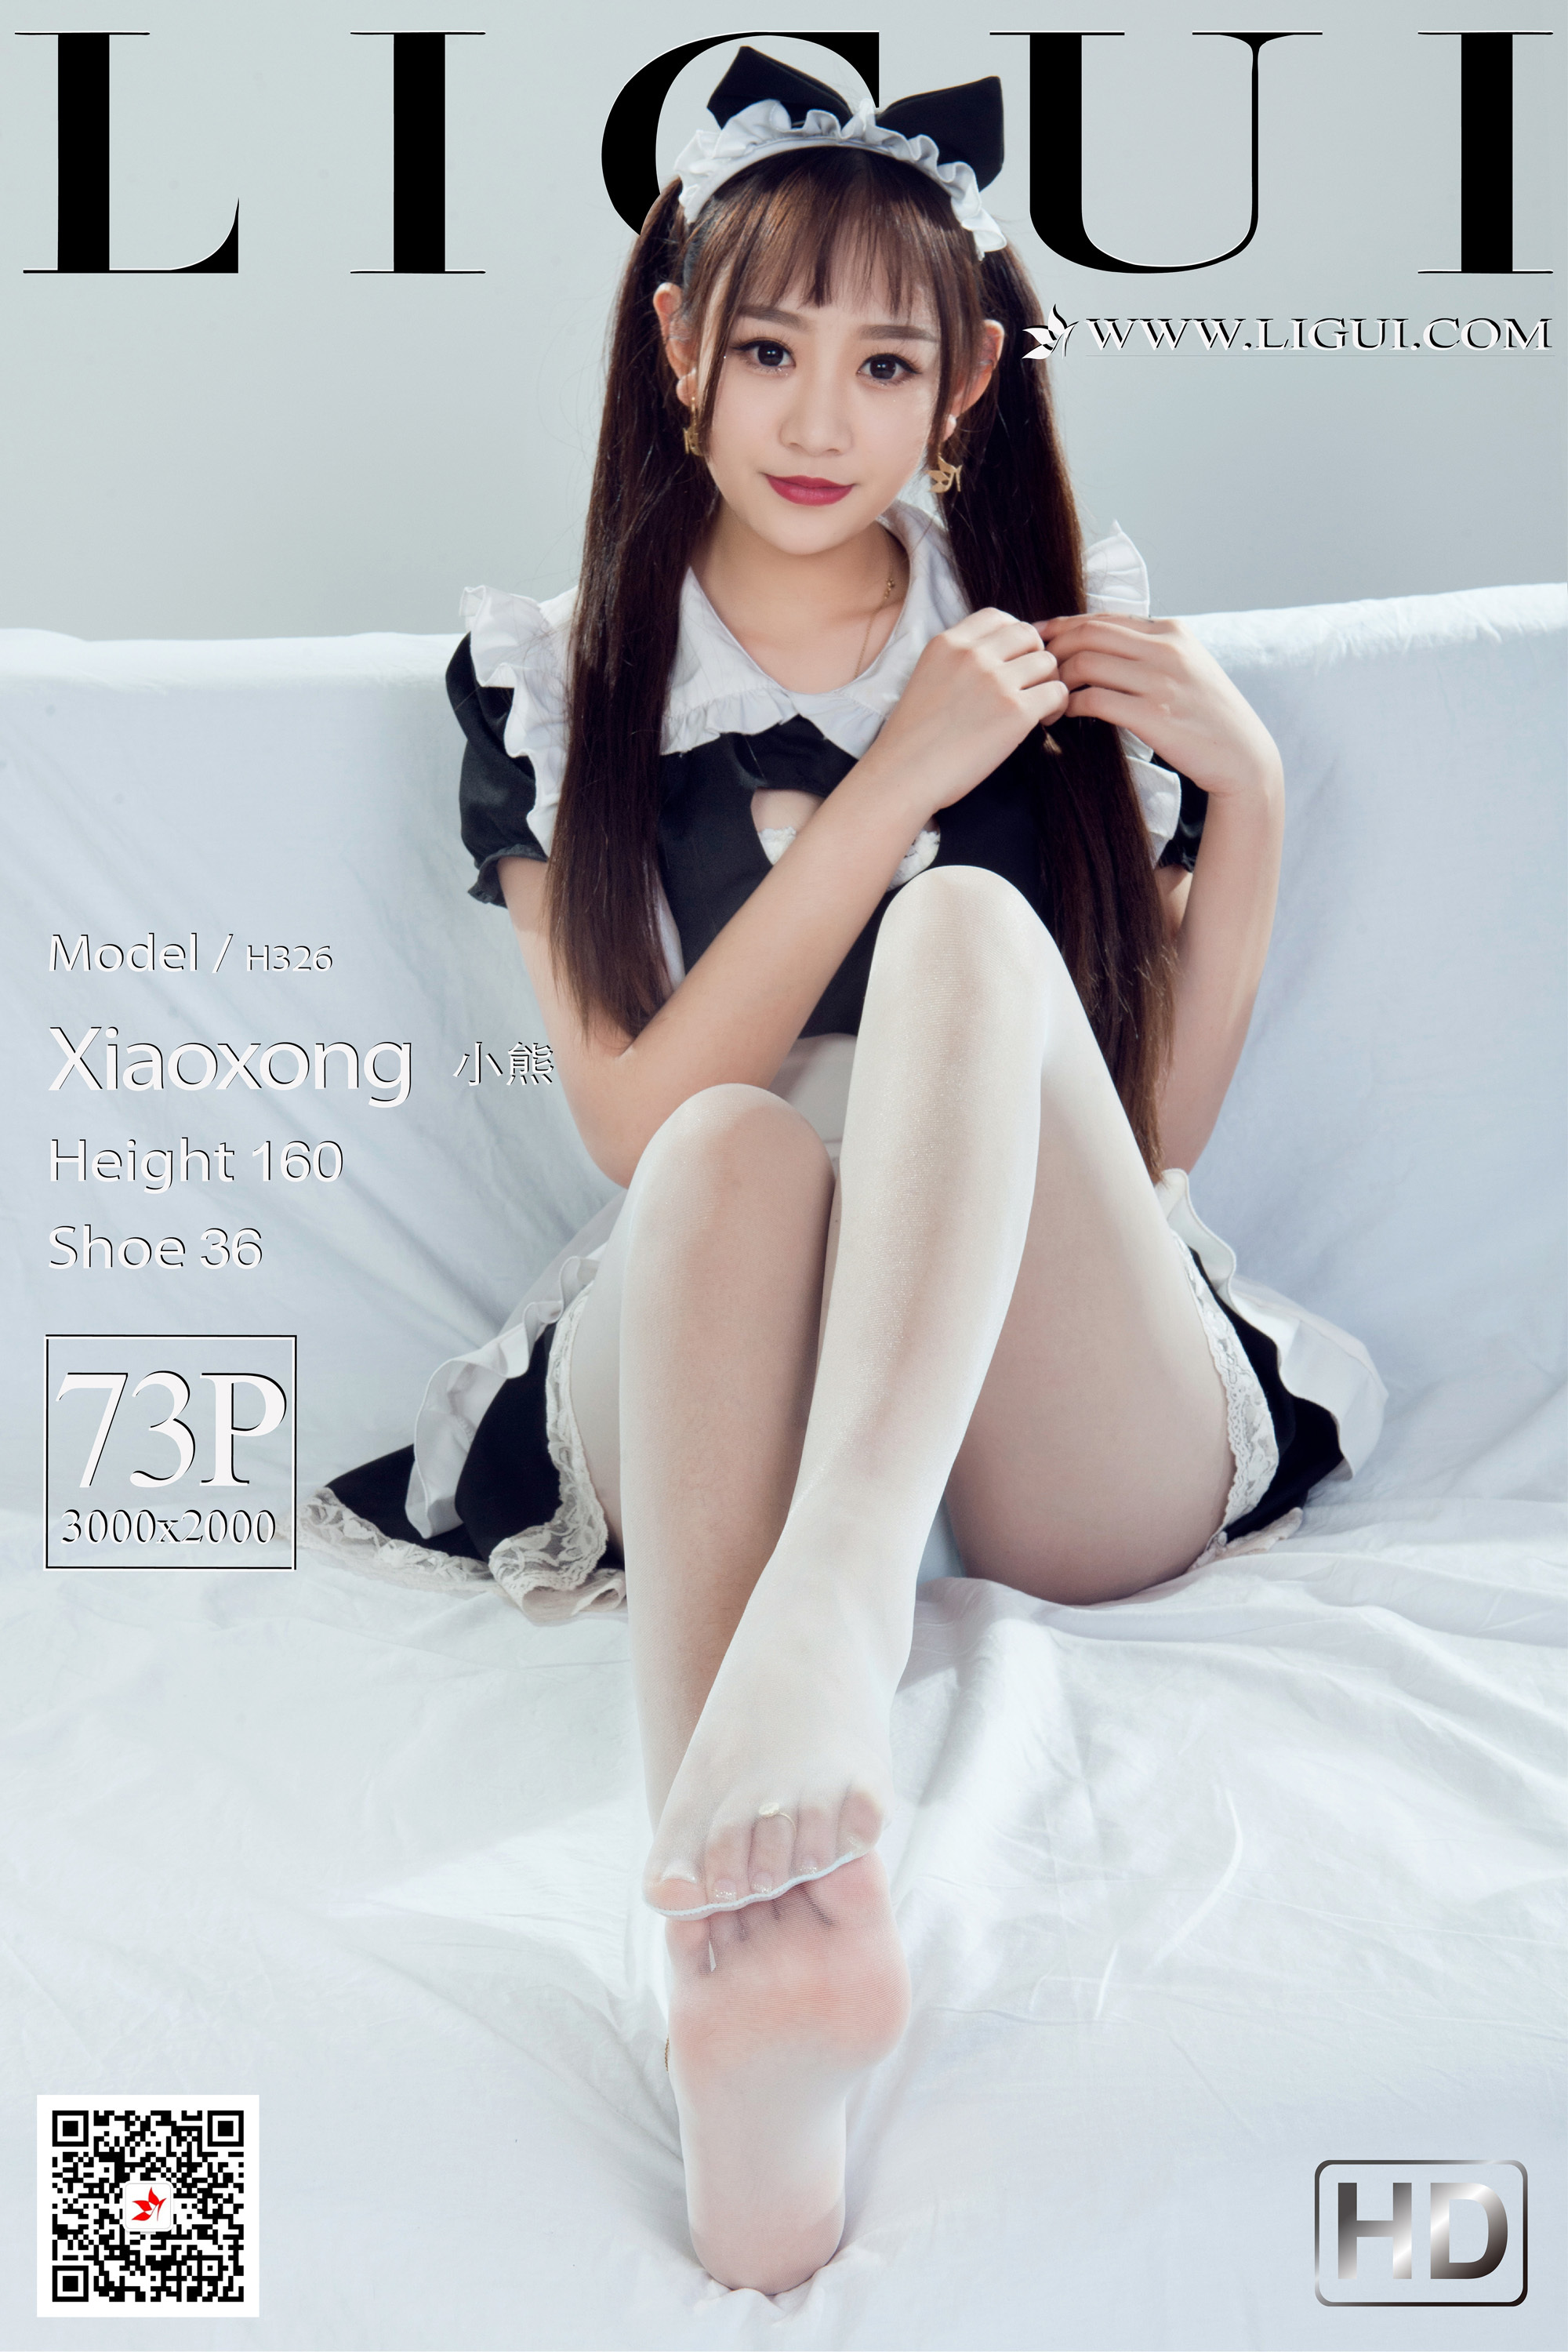 Li Gui Li cabinet 2021.03.29 network beauty model bear